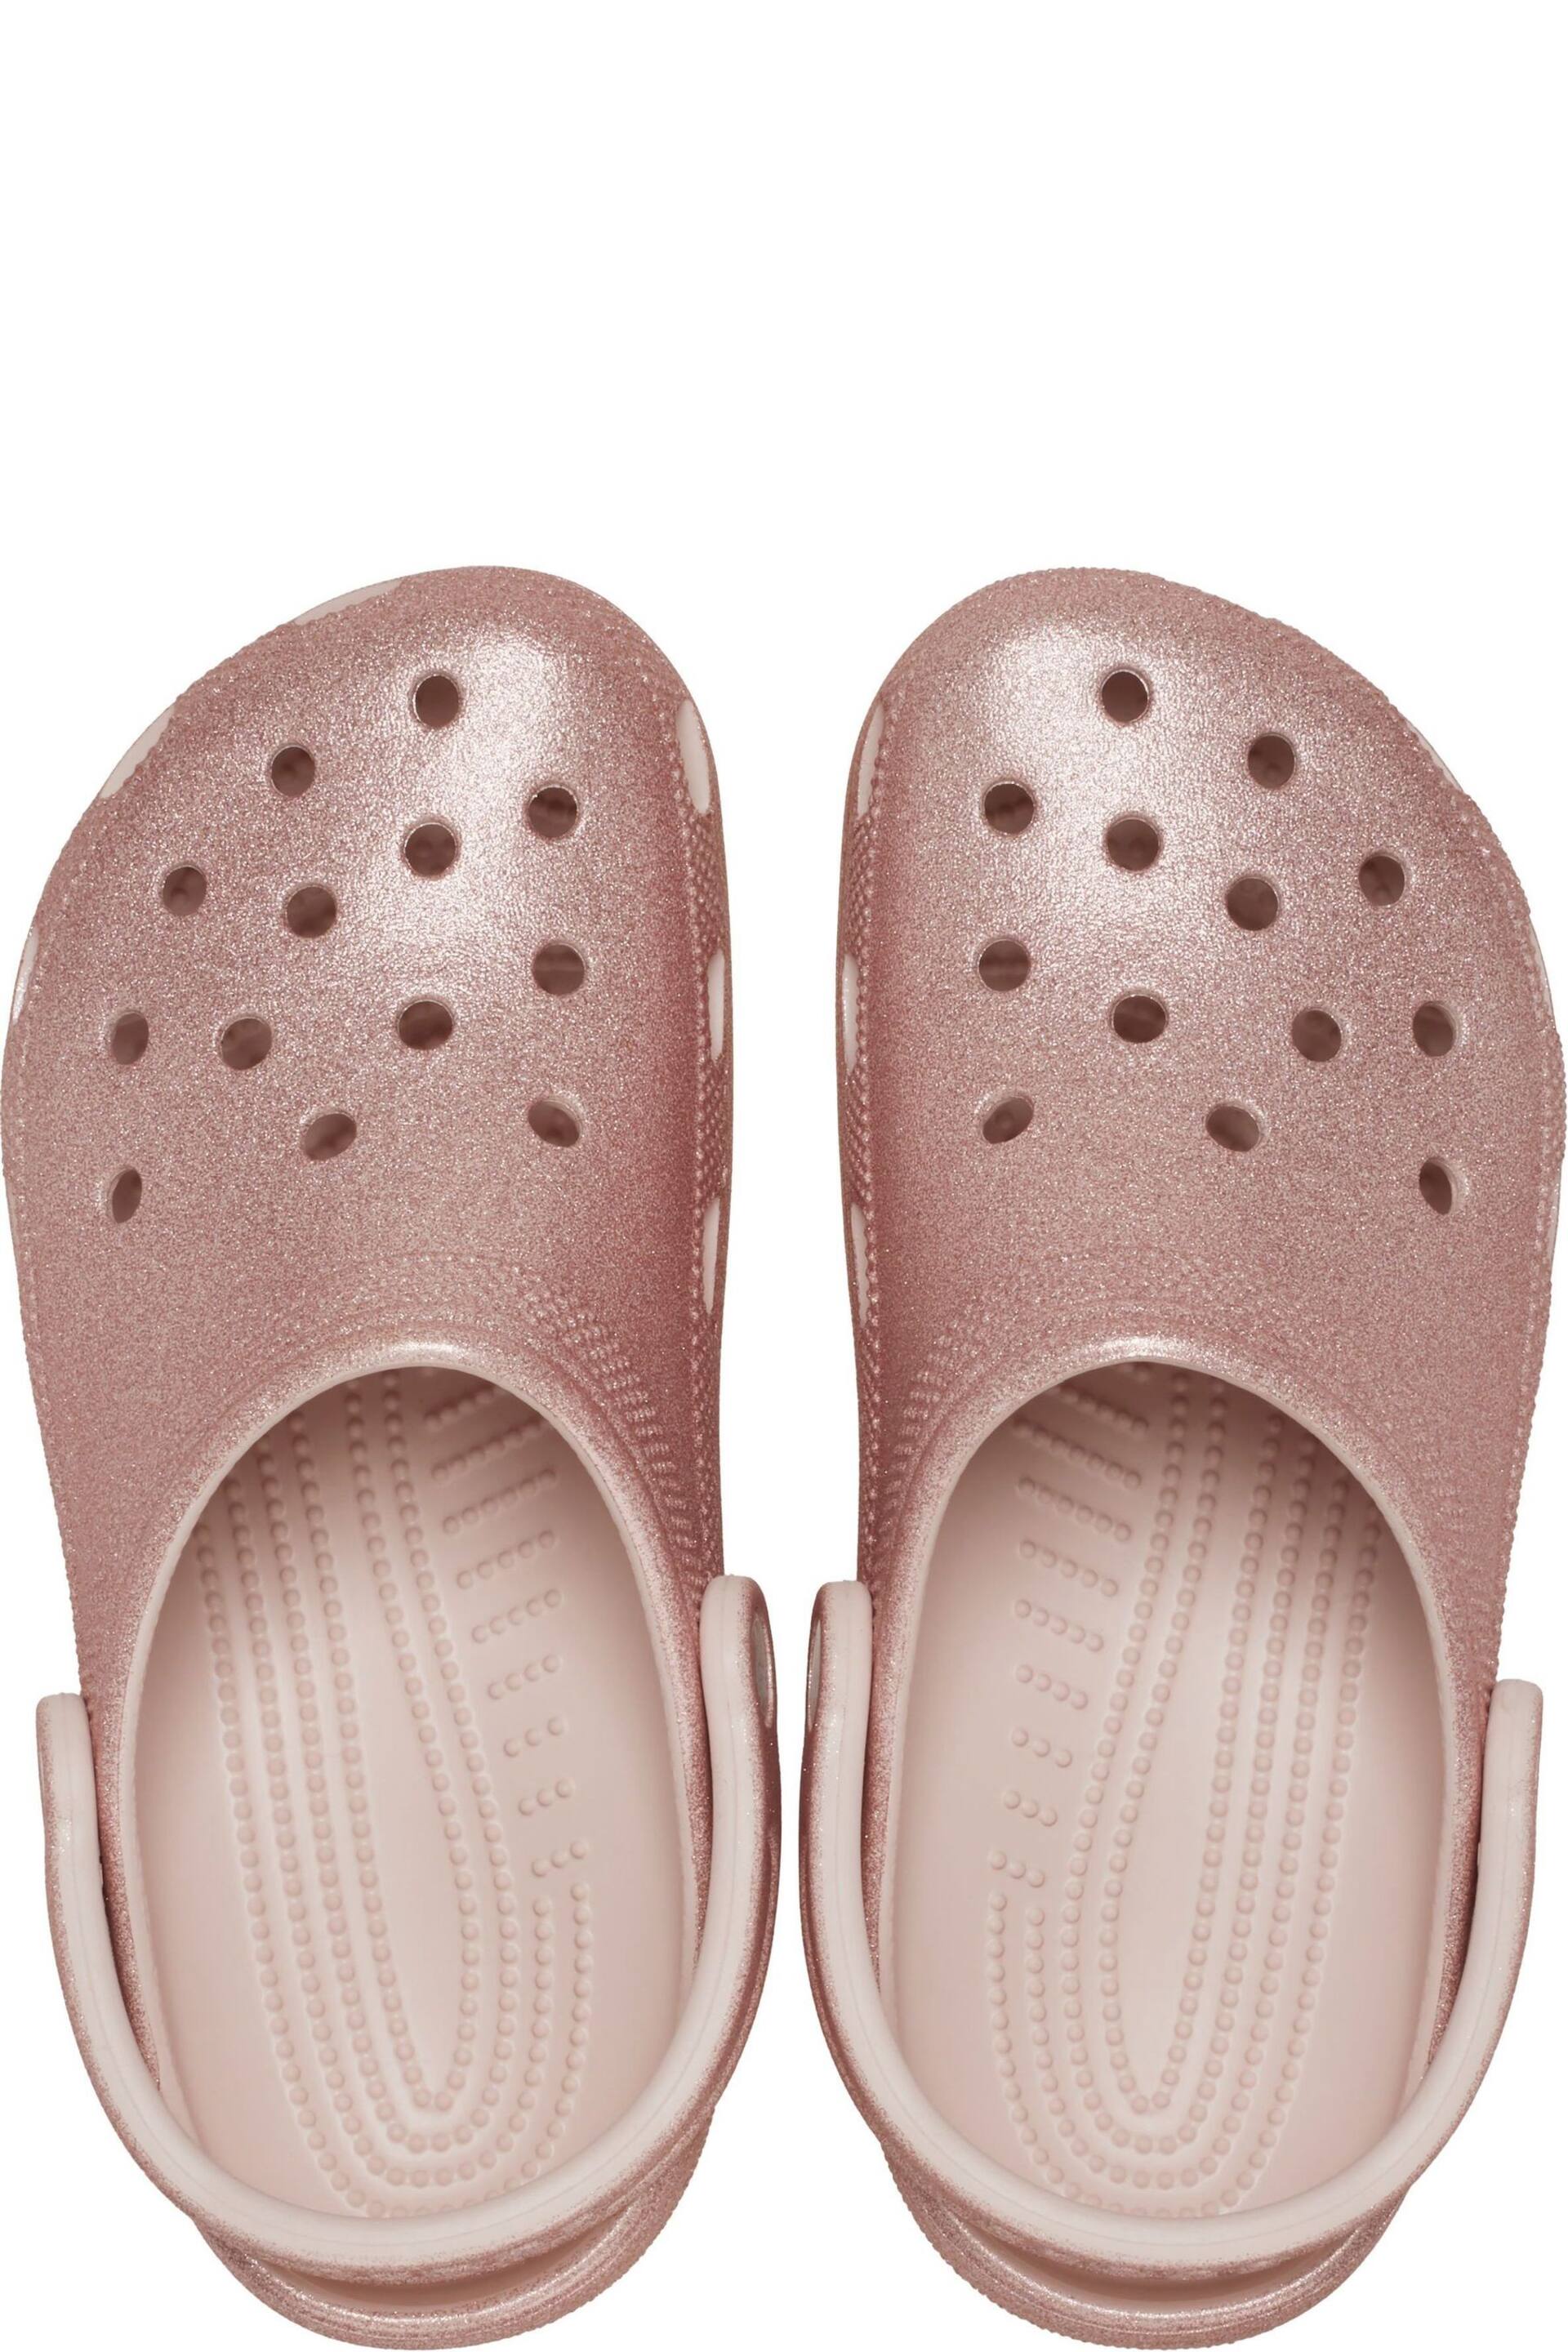 Crocs Classic Glitter Clog - Image 5 of 8